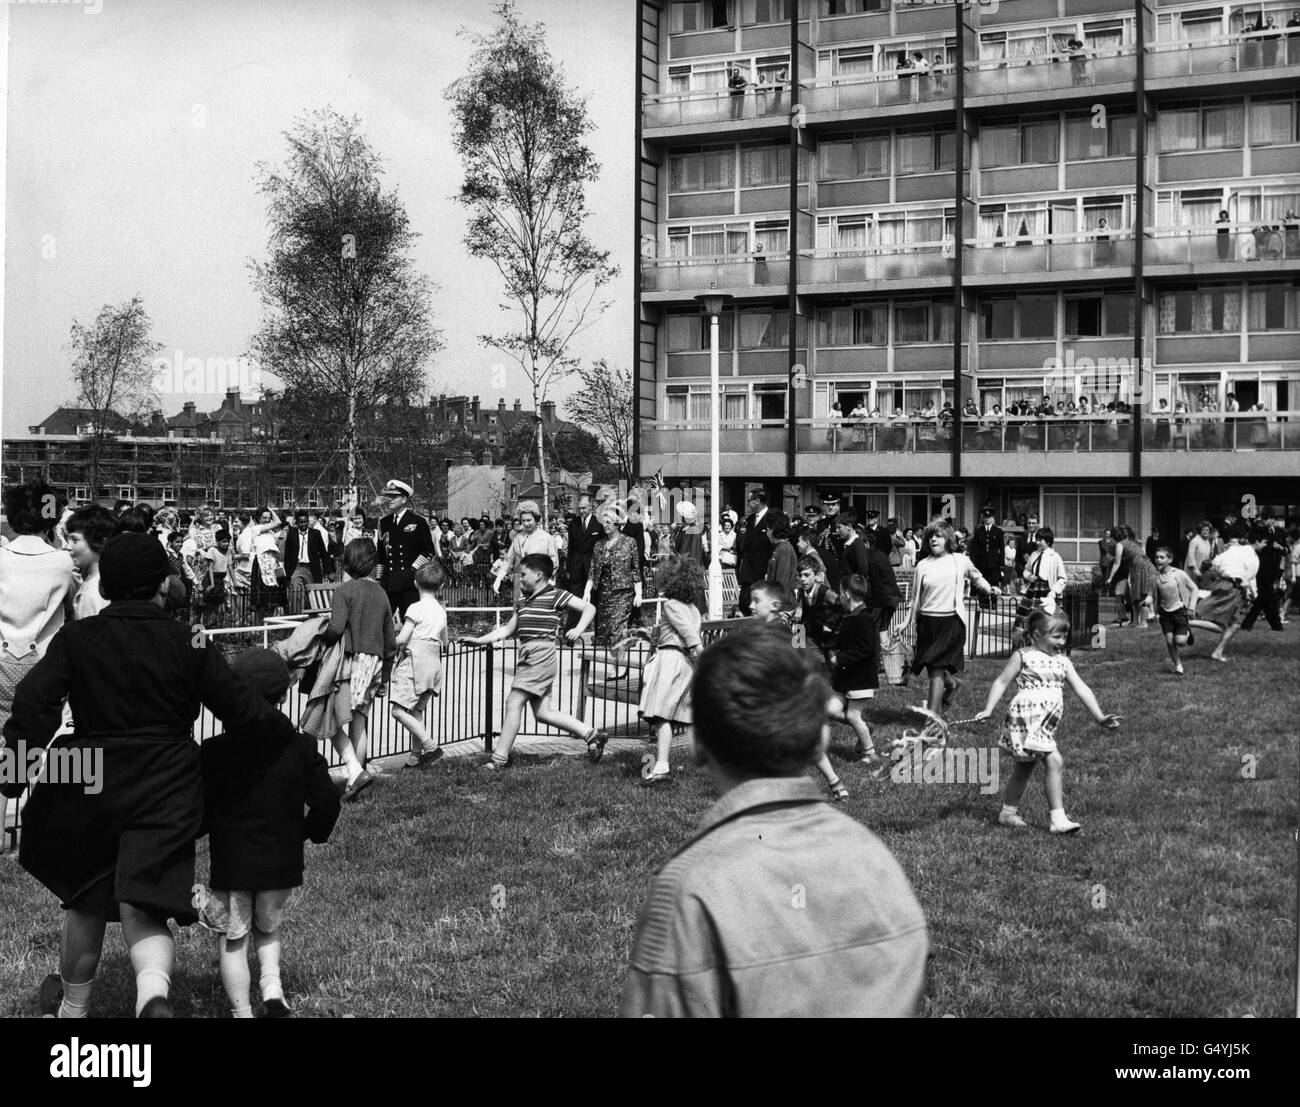 *eingescannte Low-Res from Print* Kinder laufen aufgeregt über das Gras, als Queen Elizabeth II (Mitte, leichter Mantel) und der Duke of Edinburgh in der Nähe des Wickham House (Hintergrund) auf dem Stiffford Estate, Stepney, im Londoner East End spazieren. Stockfoto